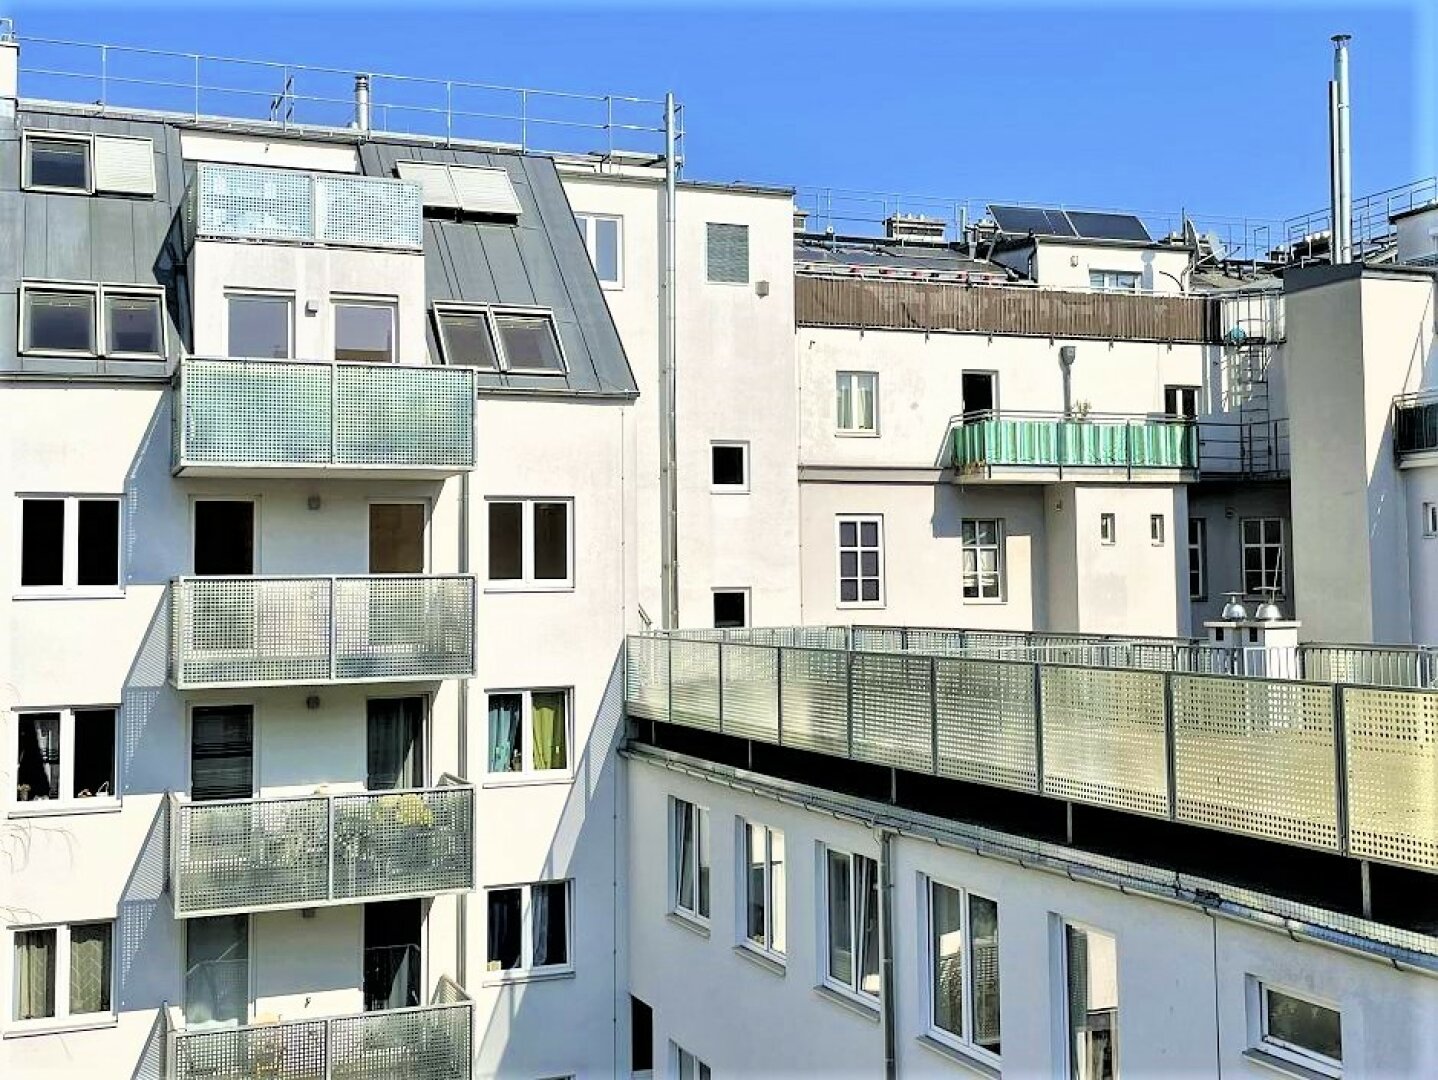 SONNIGE 75 m2 Neubau mit 8 m2 Balkon, 2 Zimmer, Wohnküche, WG-geeignet, Wannenbad, Ruhelage, Garagenplatz möglich, Lorystraße